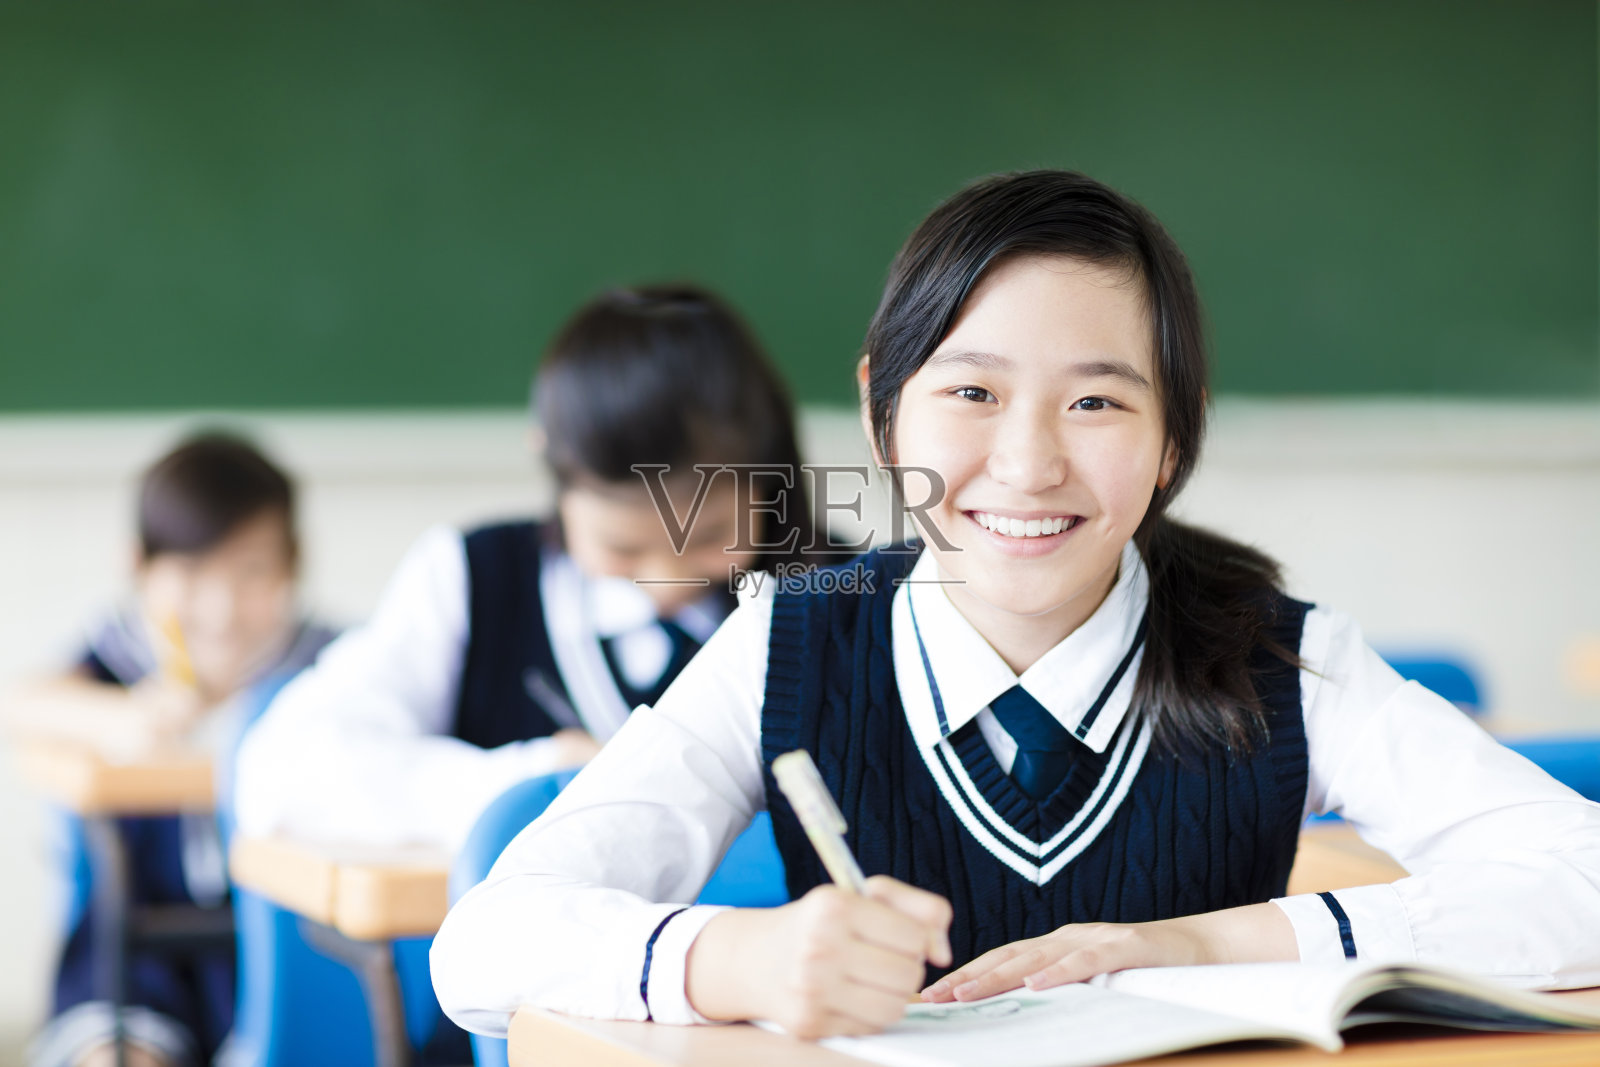 微笑的学生女孩在教室和她的朋友在后面照片摄影图片